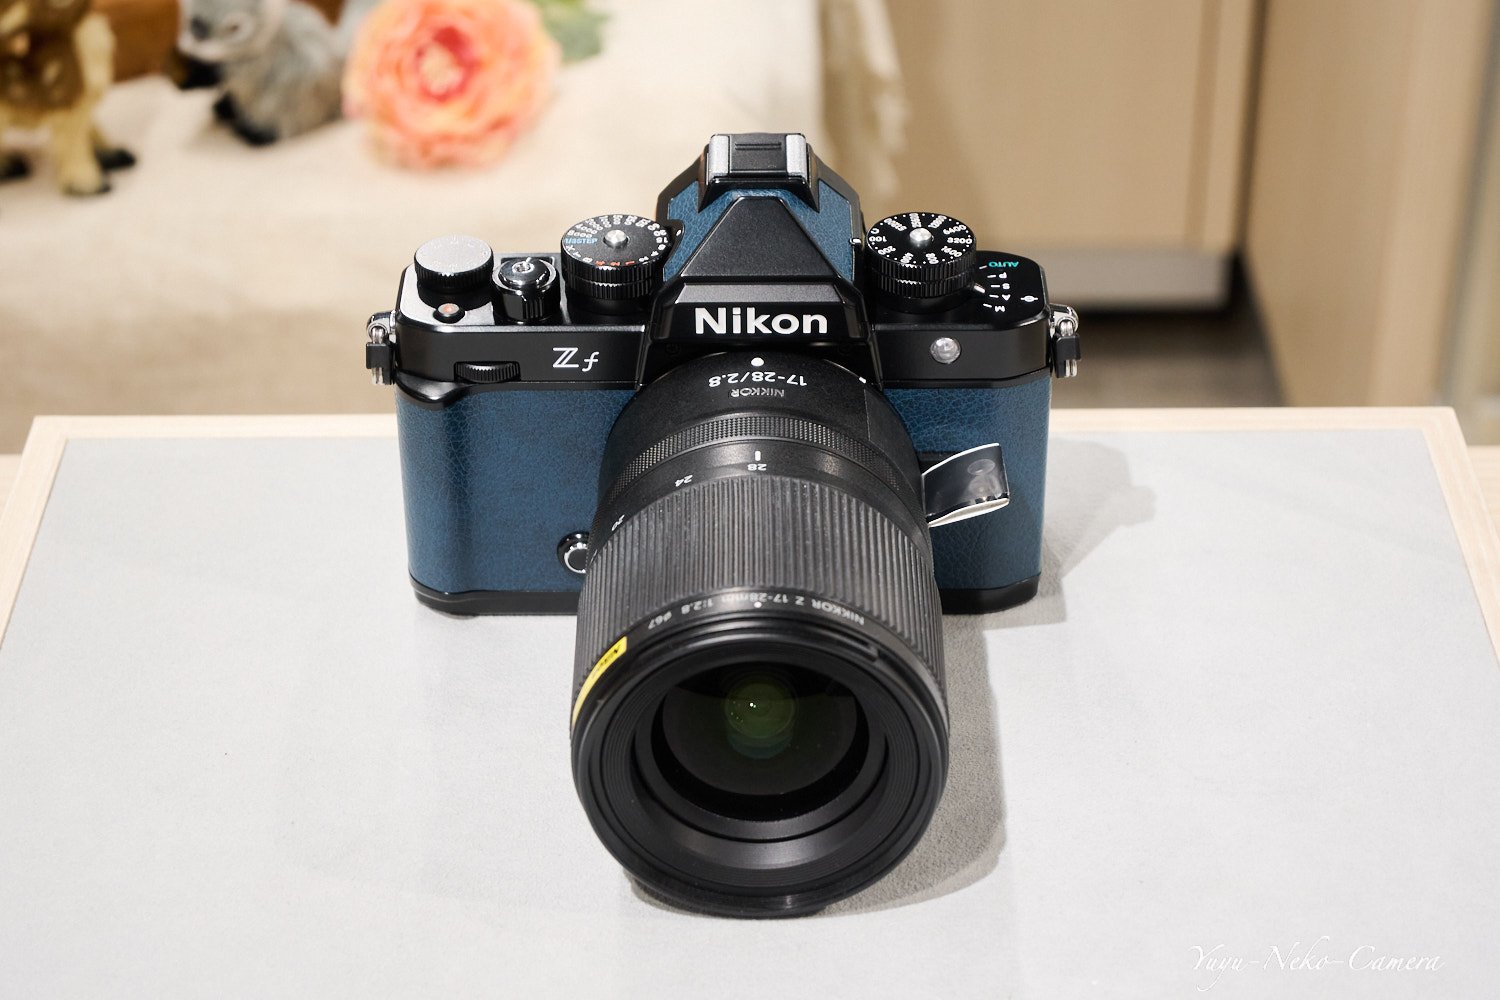 Nikon Zf + NIKKOR Z 17-28mm f/2.8